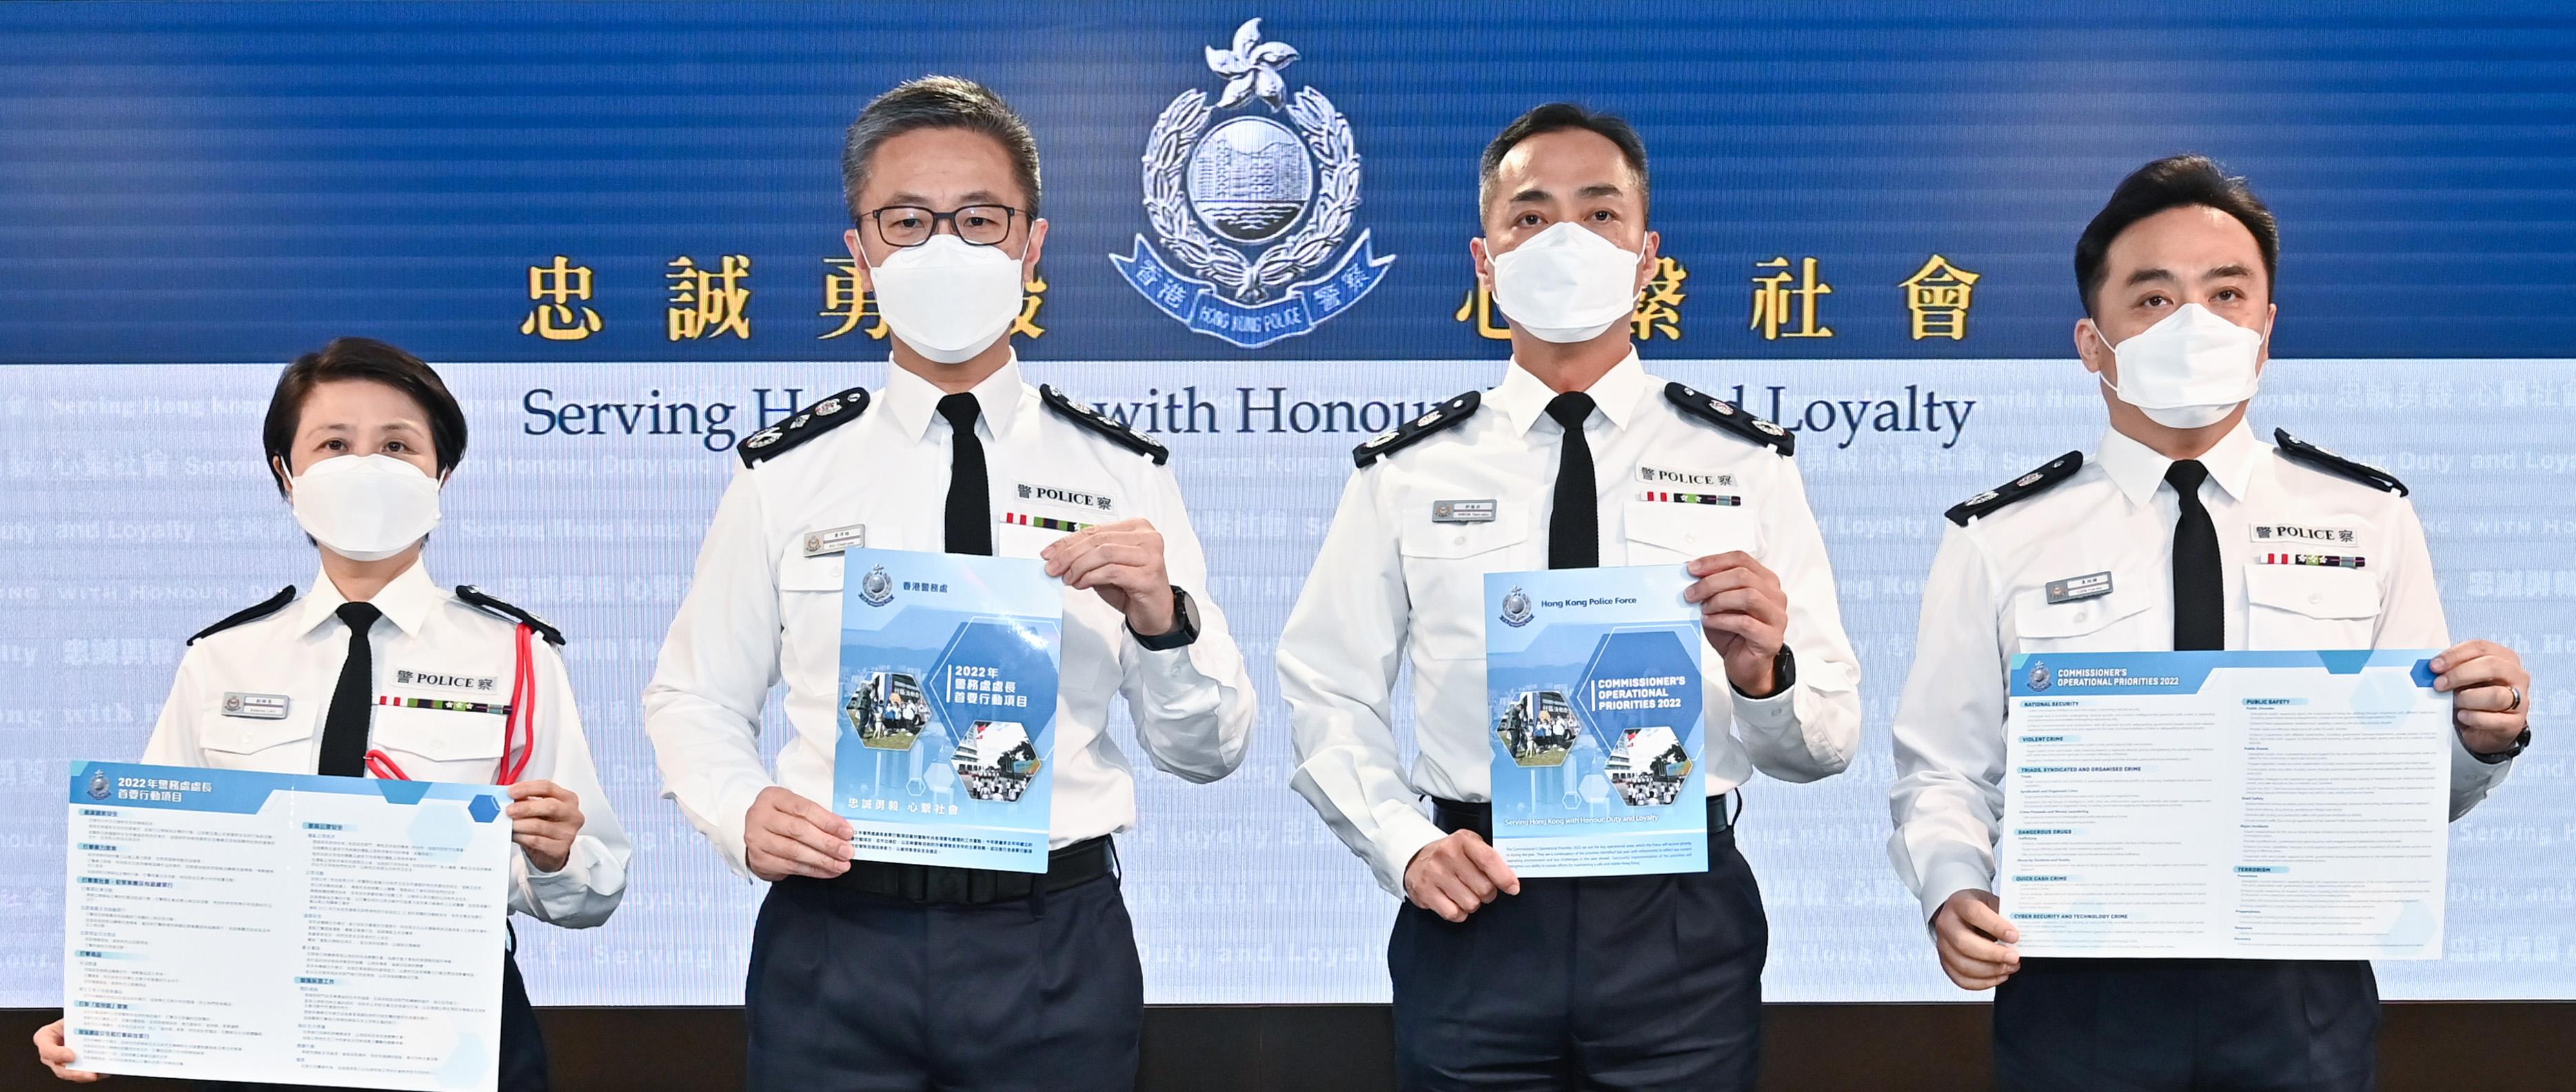 警務處處長蕭澤頤（左二）今日（一月二十七日）在記者會上回顧2021年香港的治安情況及警務工作。警務處副處長（管理）郭蔭庶（右二）、副處長（國家安全）劉賜蕙（左一）及副處長（行動）袁旭健（右一）亦有出席記者會。